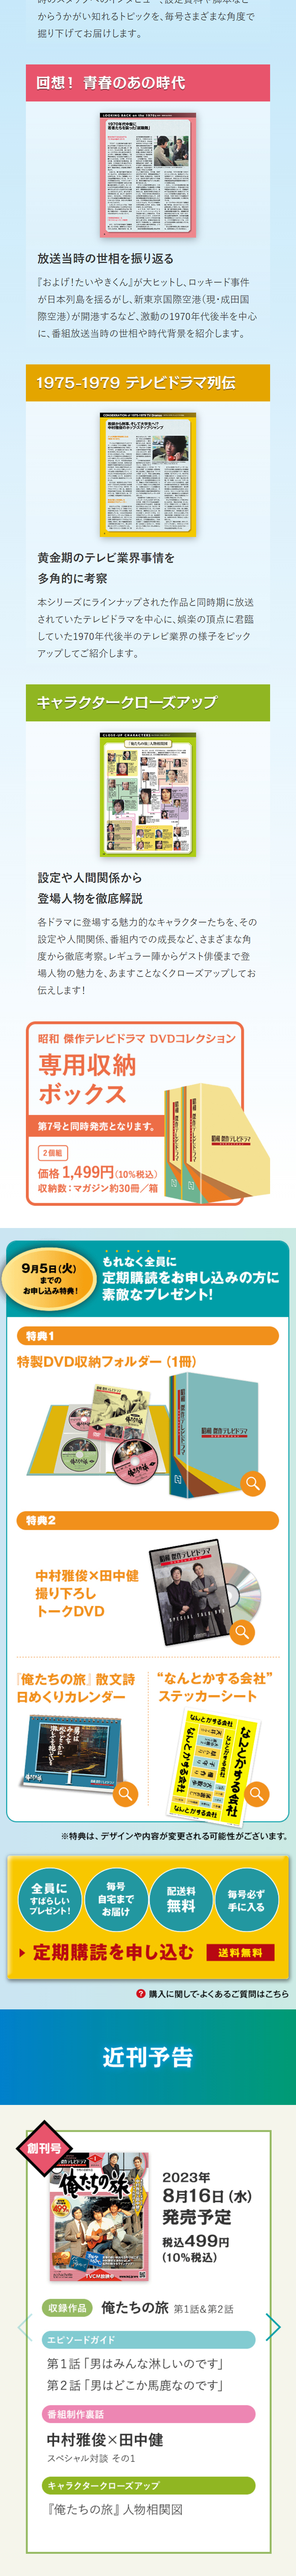 昭和 傑作テレビドラマ DVDコレクション_sp_3